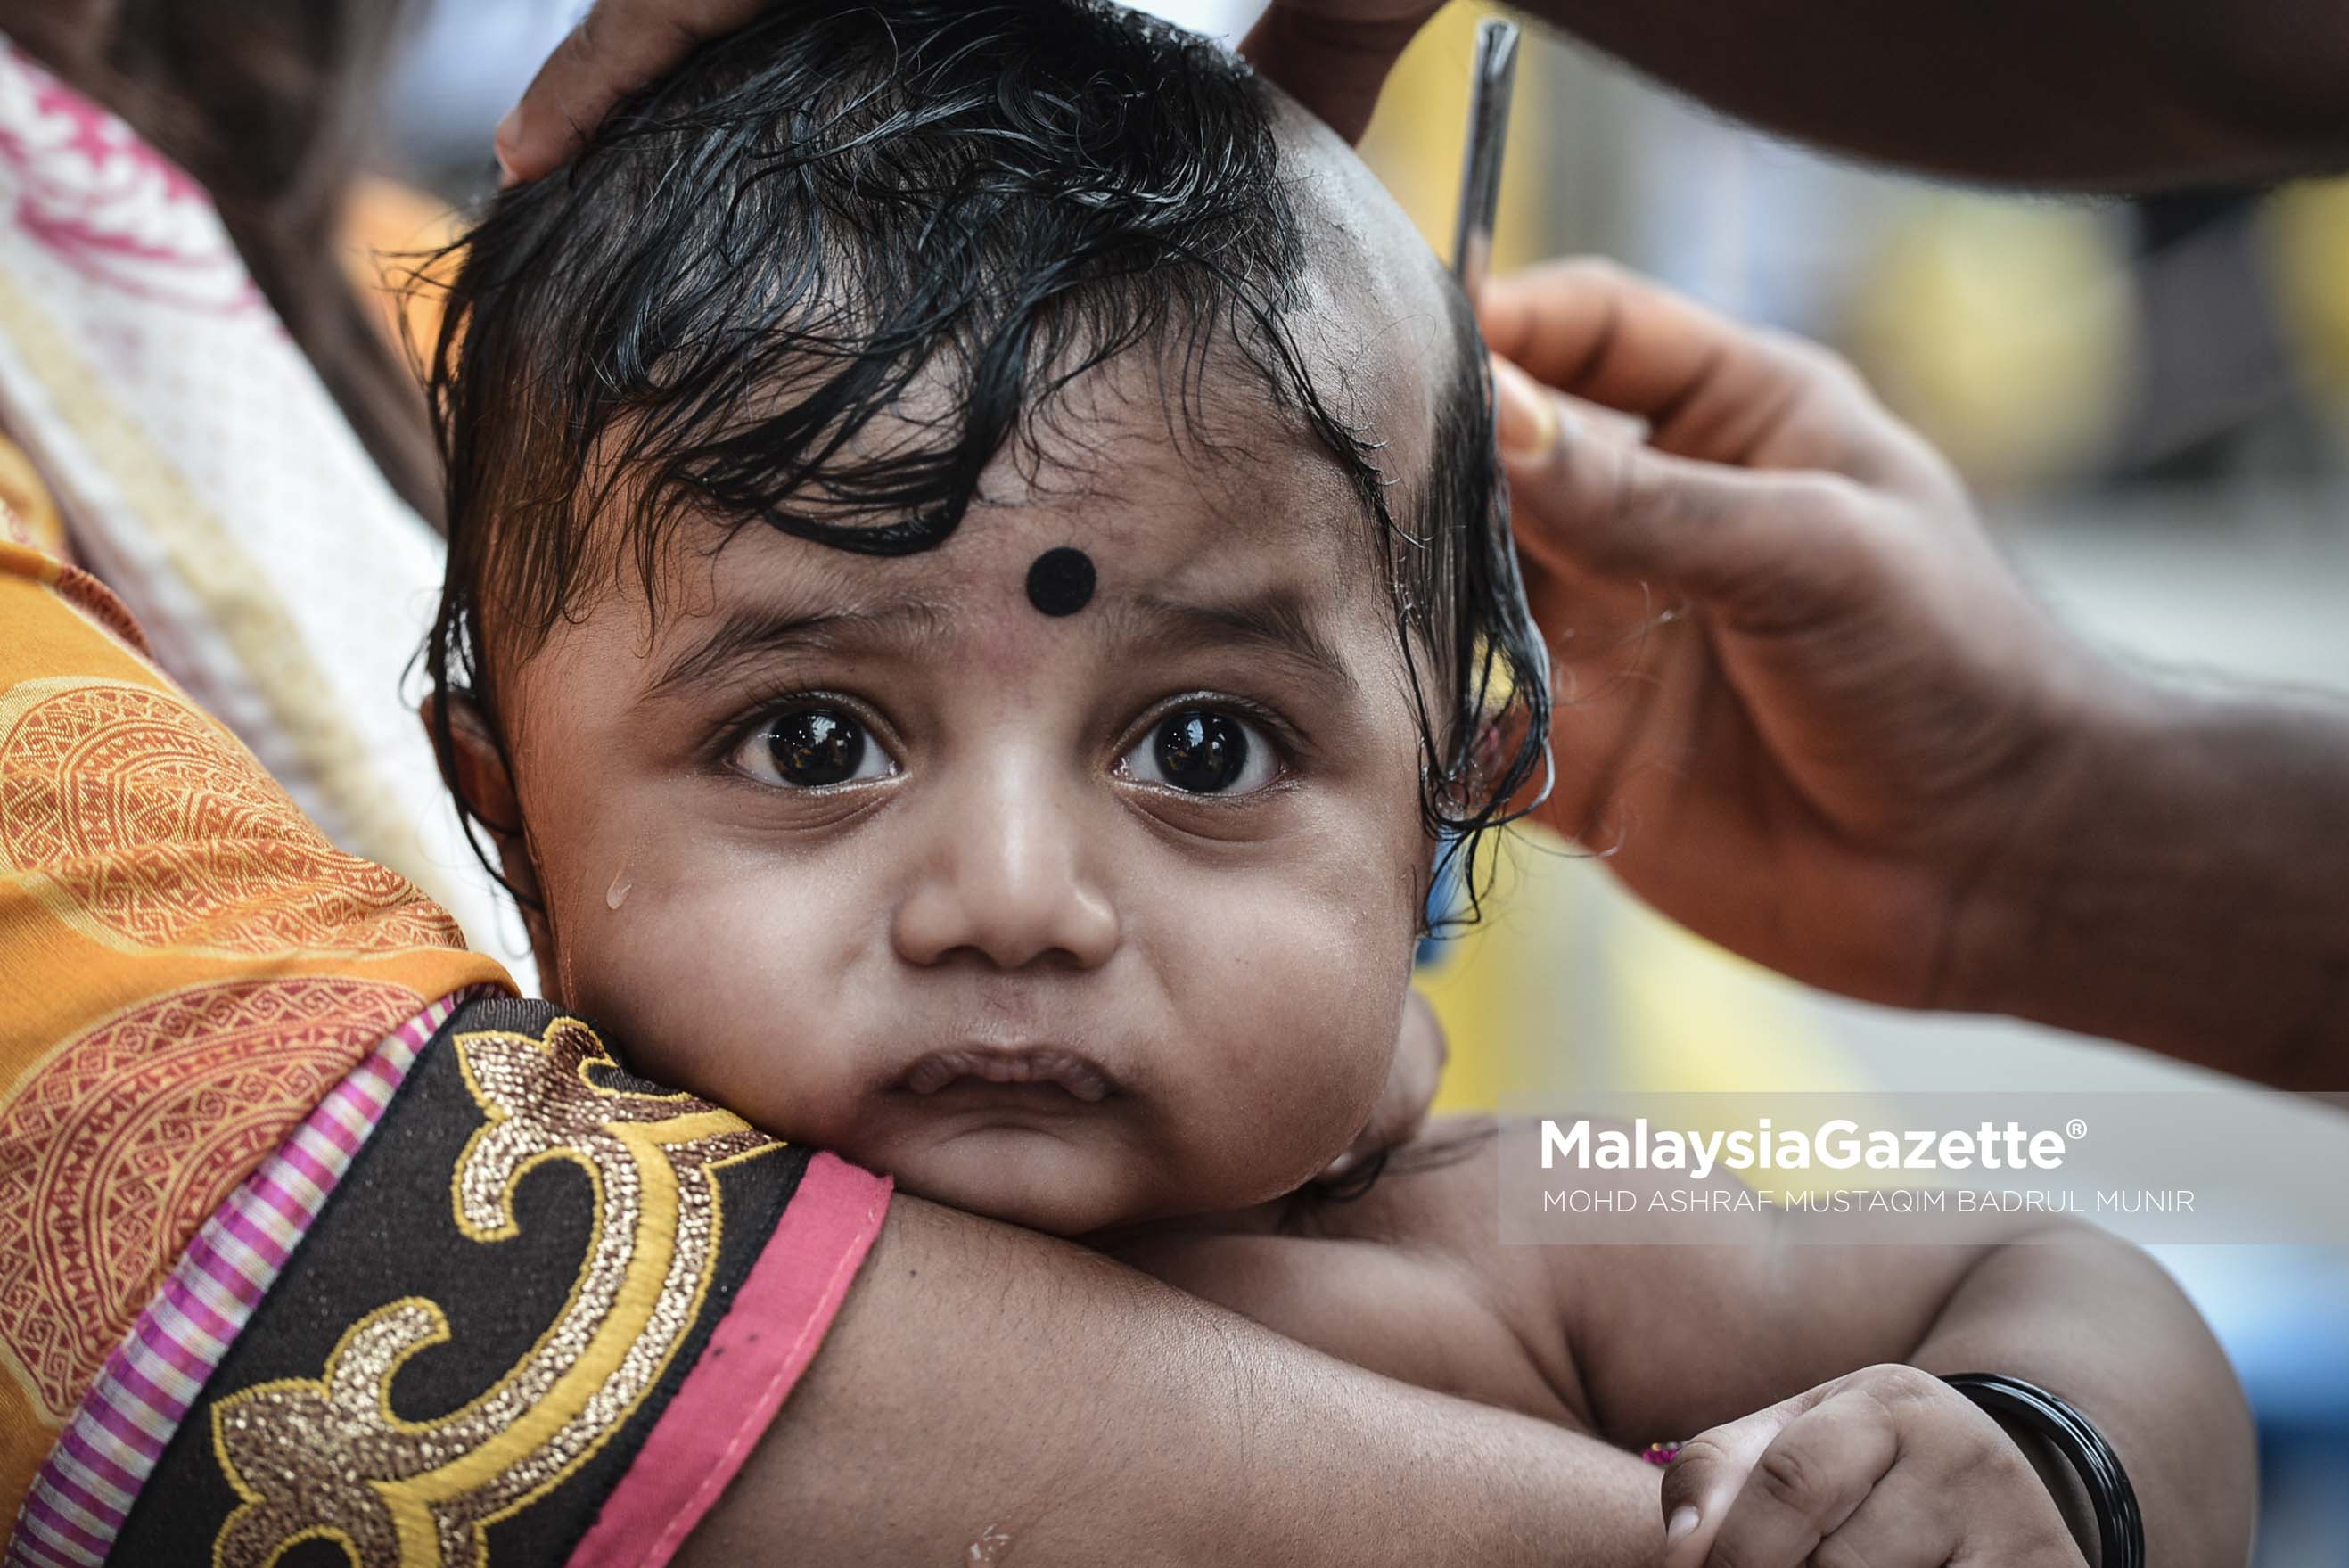 Seorang kanak-kanak penganut agama Hindu dicukur rambutnya ketika tinjauan lensa Malaysia Gazette sempena sambutan Thaipusam 2017 di Batu Caves, Selangor. foto ASHRAF MUSTAQIM BADRUL MUNIR, 08 FEBRUARI 2017.